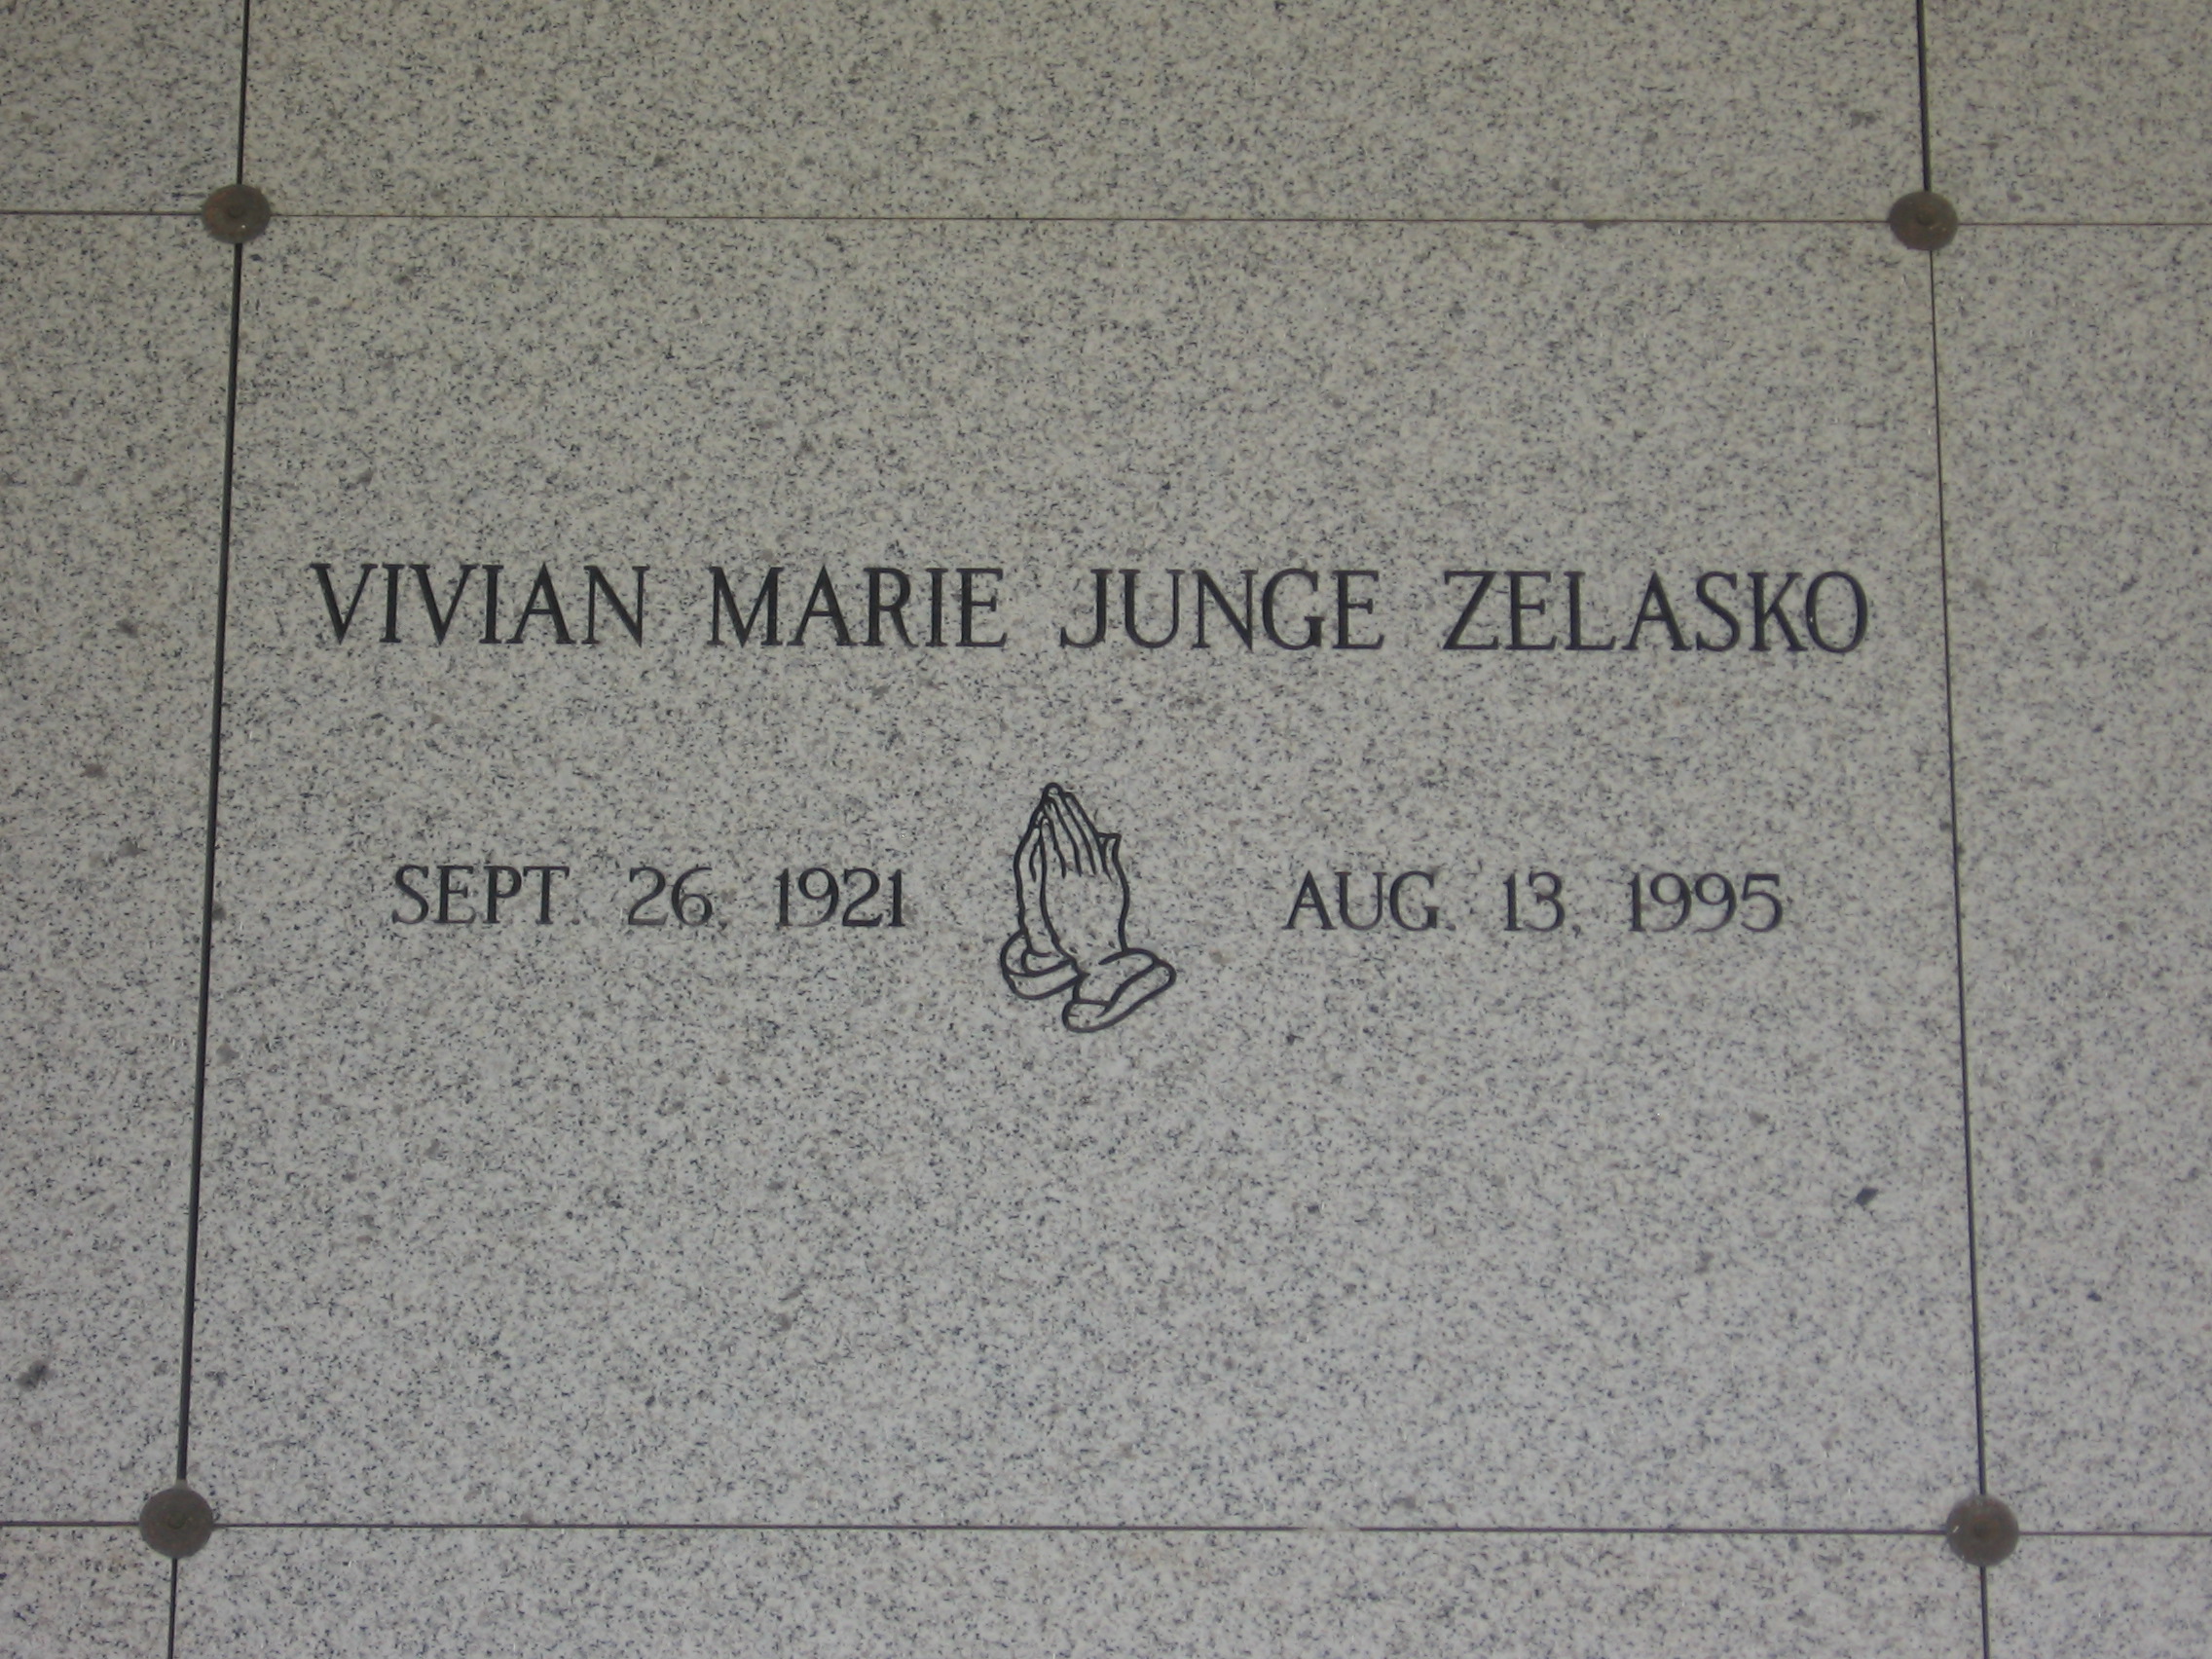 Vivian Marie Junge Zelasko